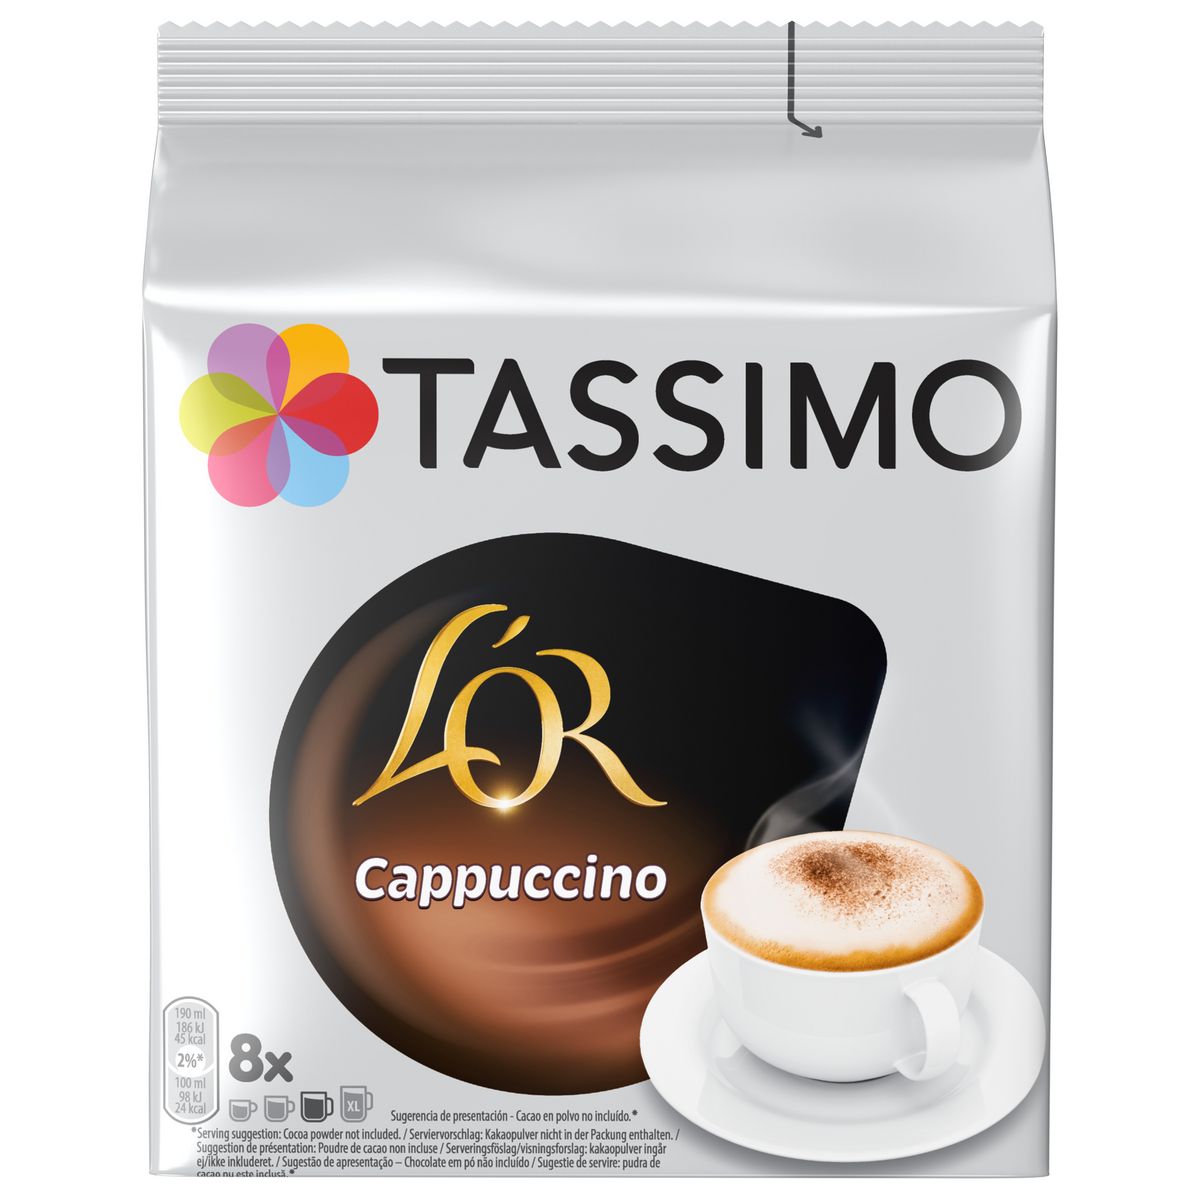 TASSIMO Dosettes de café L'Or cappuccino 8 dosettes 267,2g pas